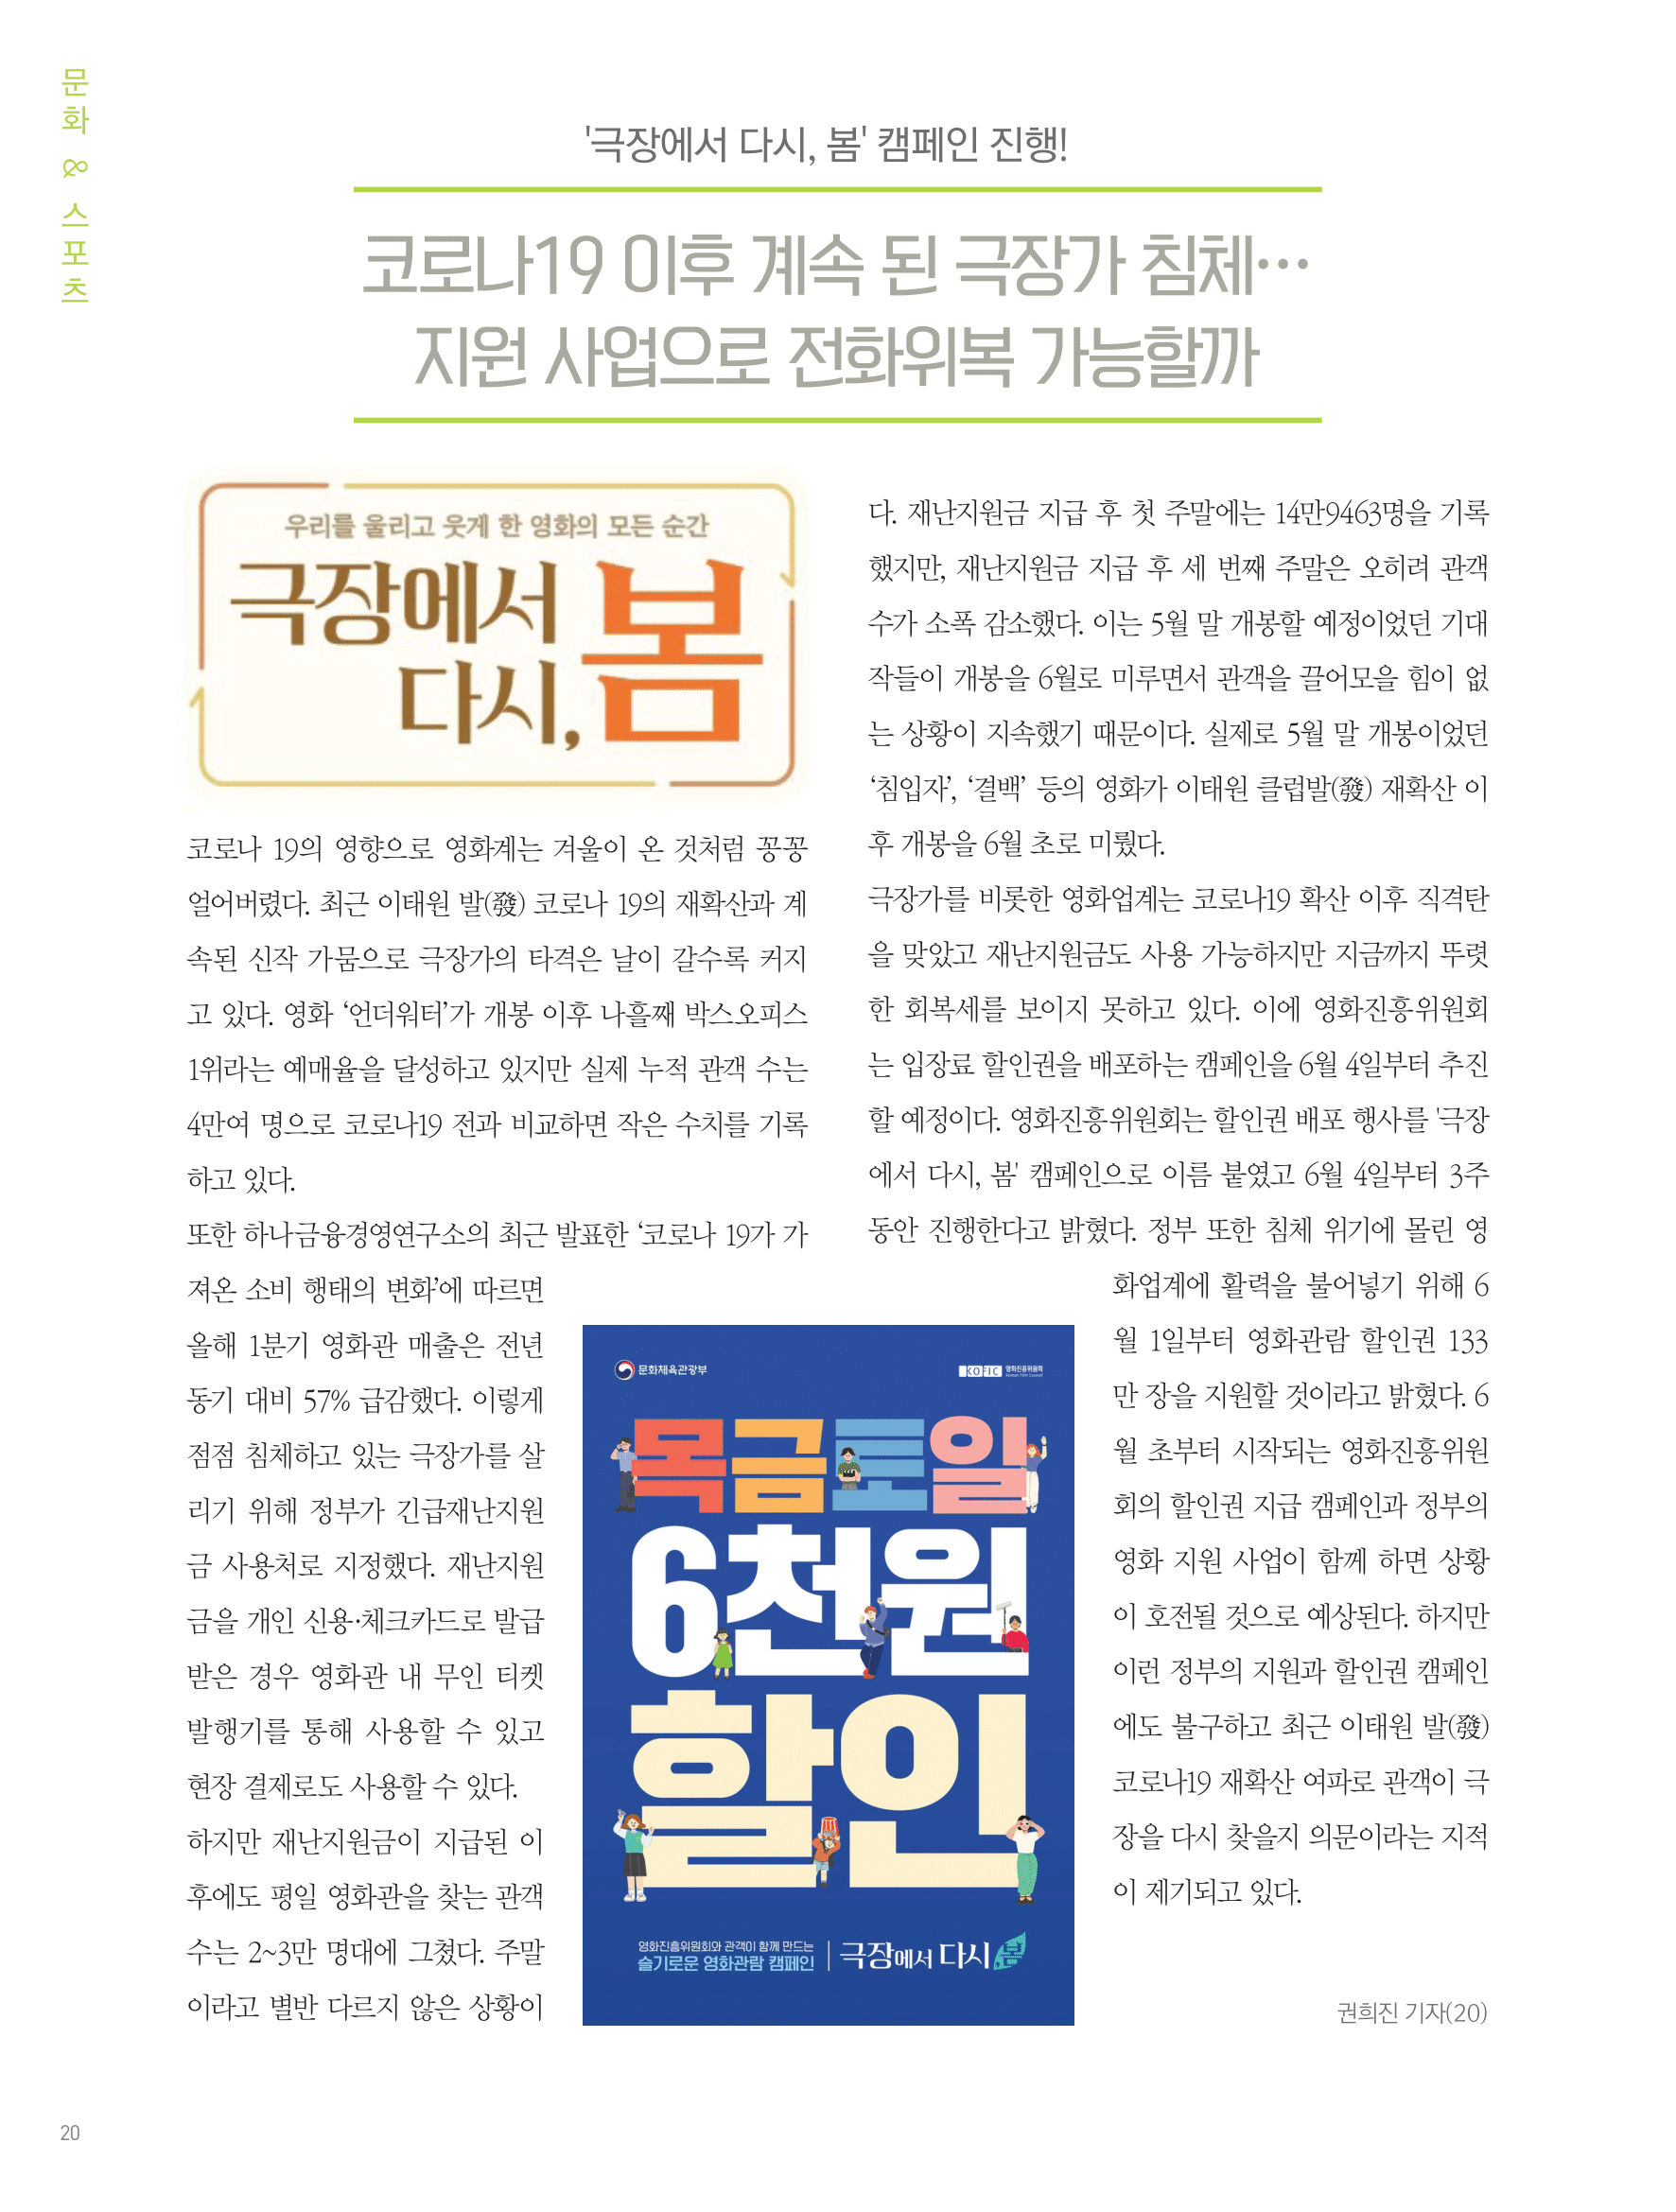 뜻새김 신문 75호 18